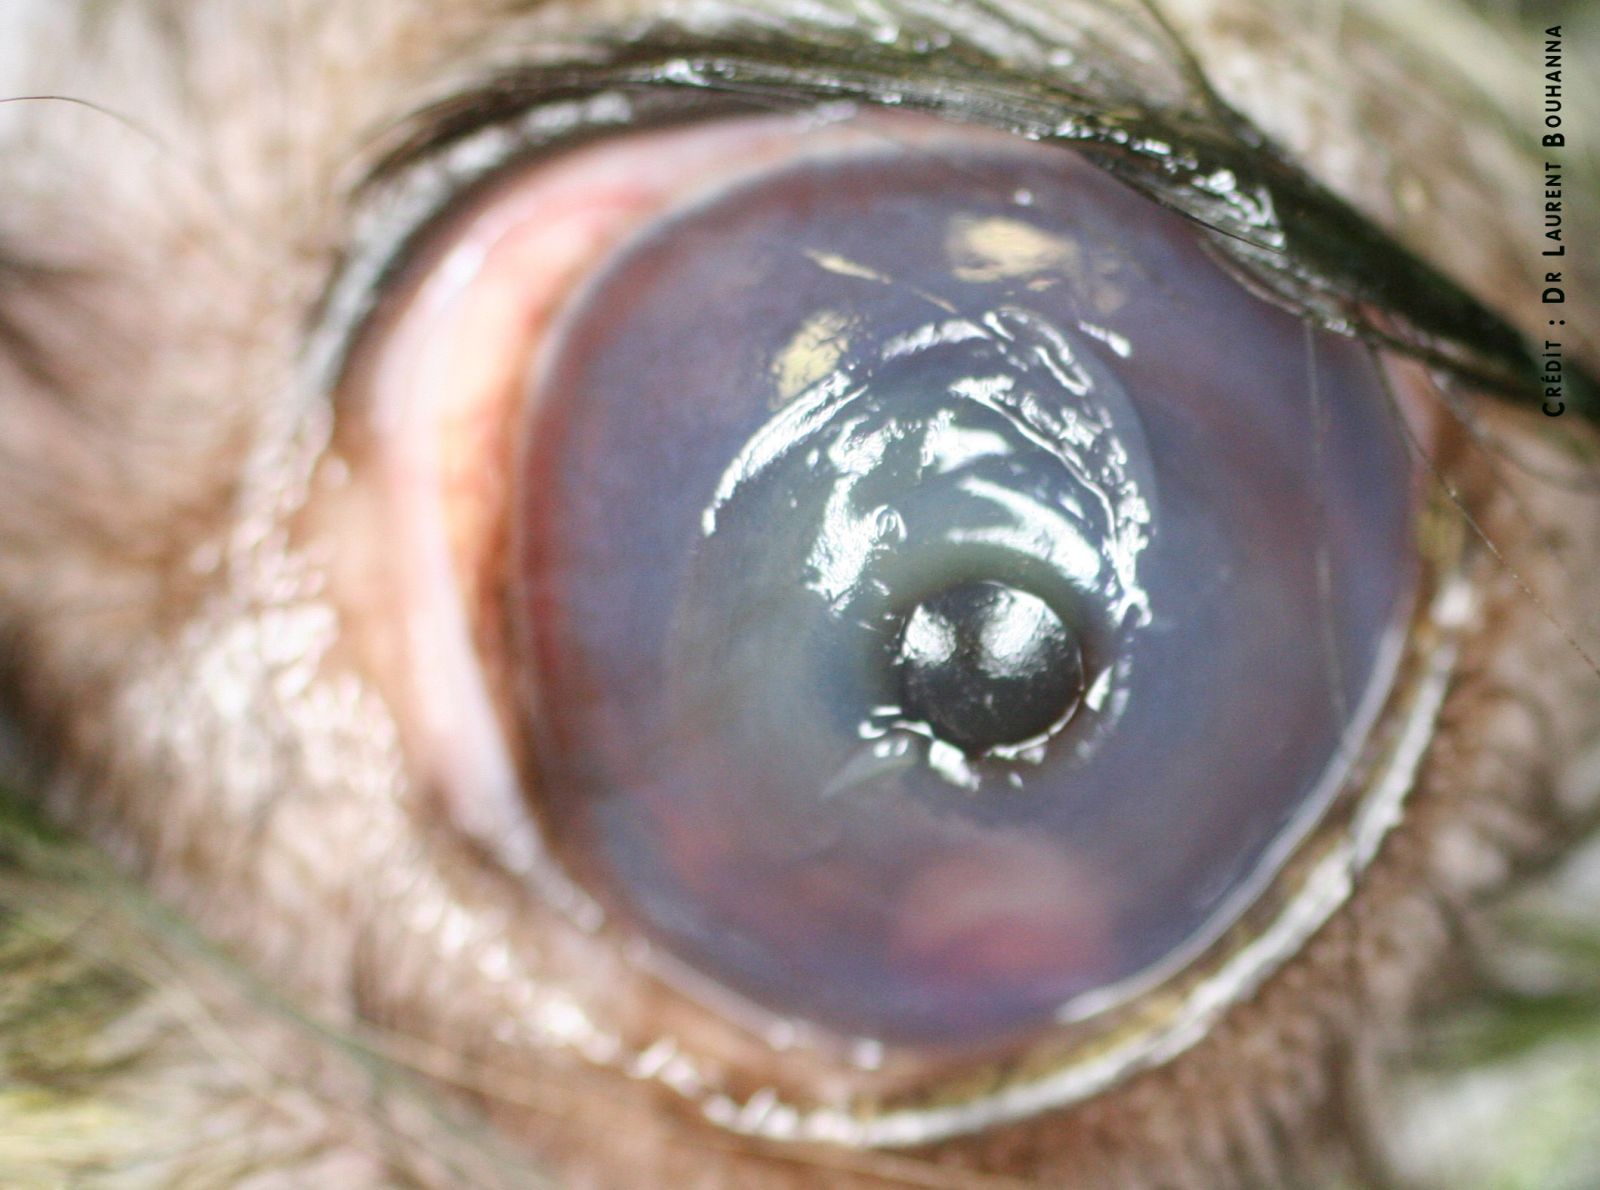 Ulcère de la cornée et descemètocèle chez un chien. Au niveau de la perte de substance de la cornée, la membrane de Descemet fait hernie.